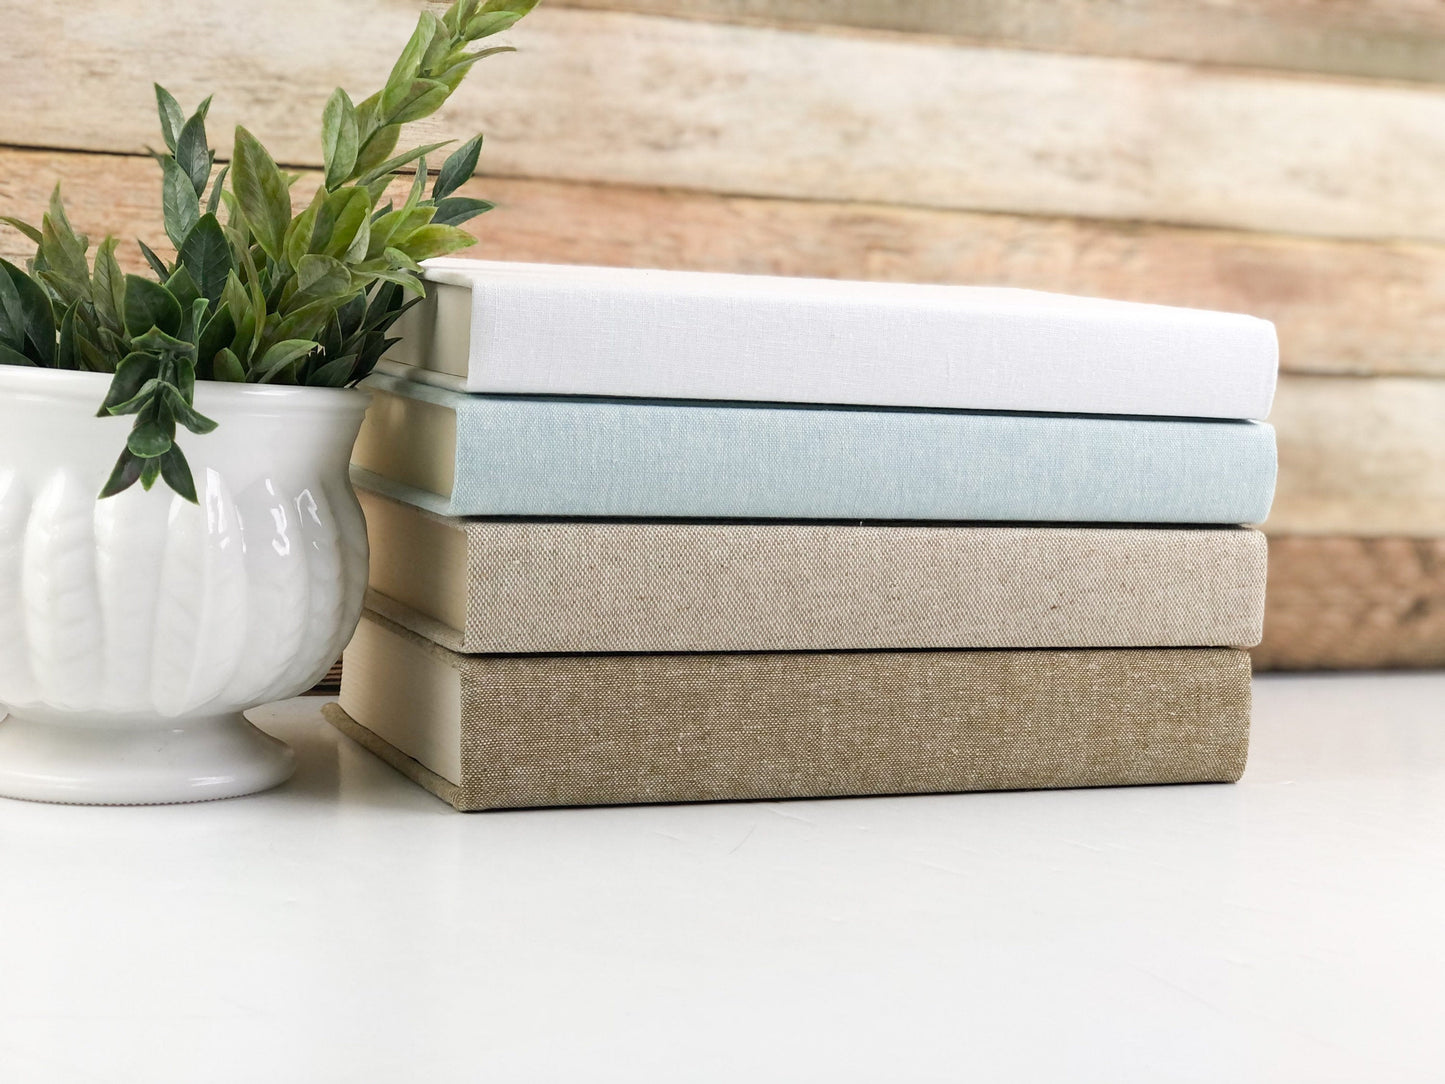 Linen Covered Books / Ecru and Aqua Decorative Books